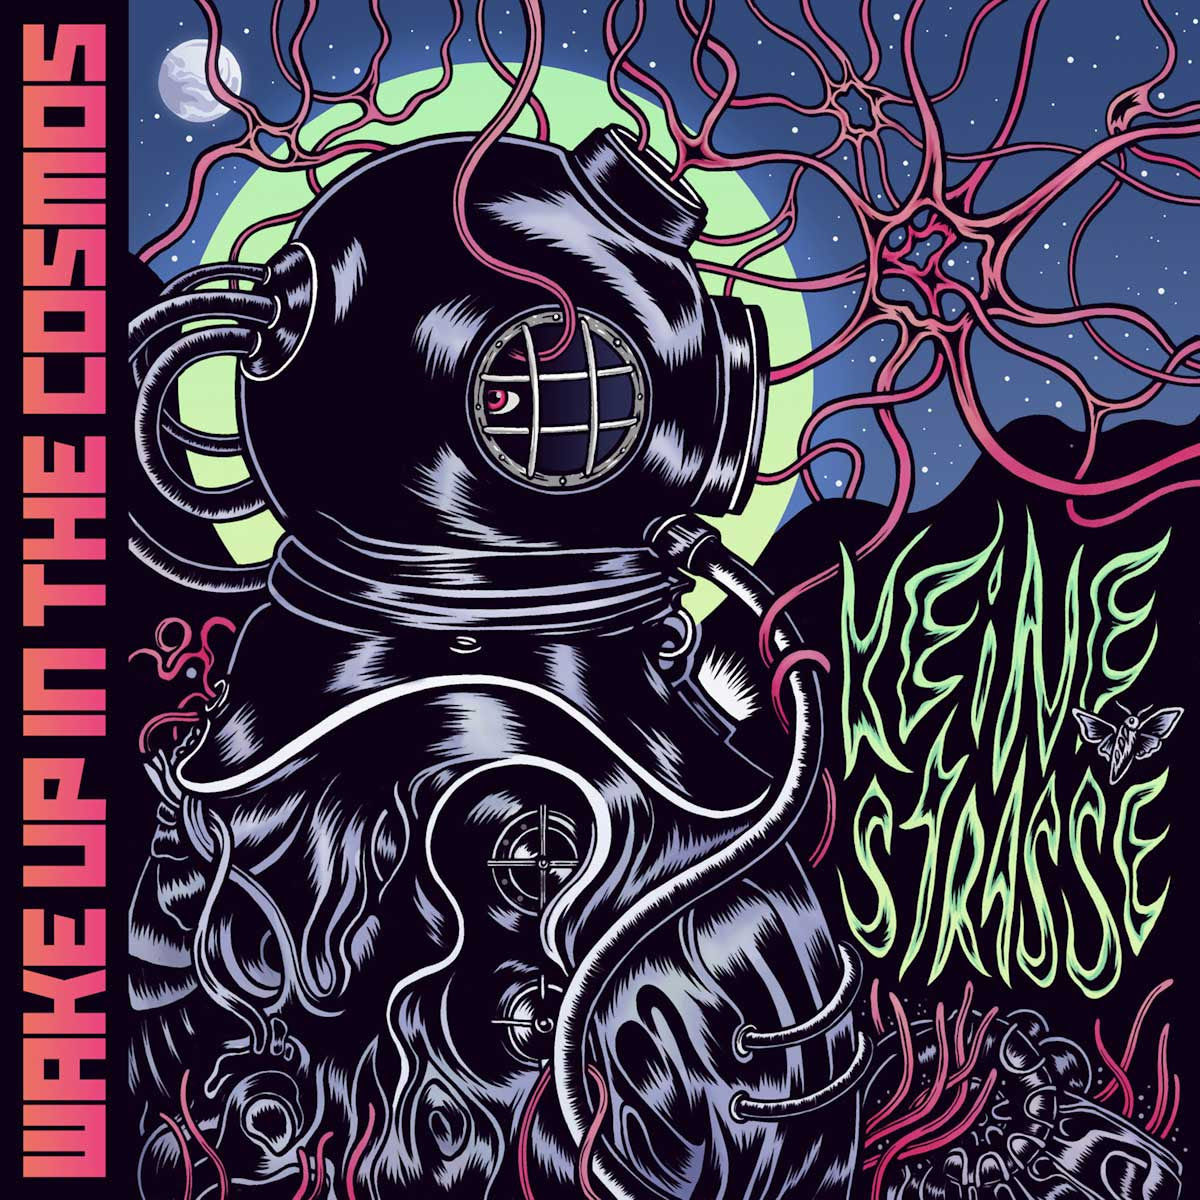 Dal 23 gennaio disponibile “Keine Strasse” il primo album dei Wake up in the cosmos